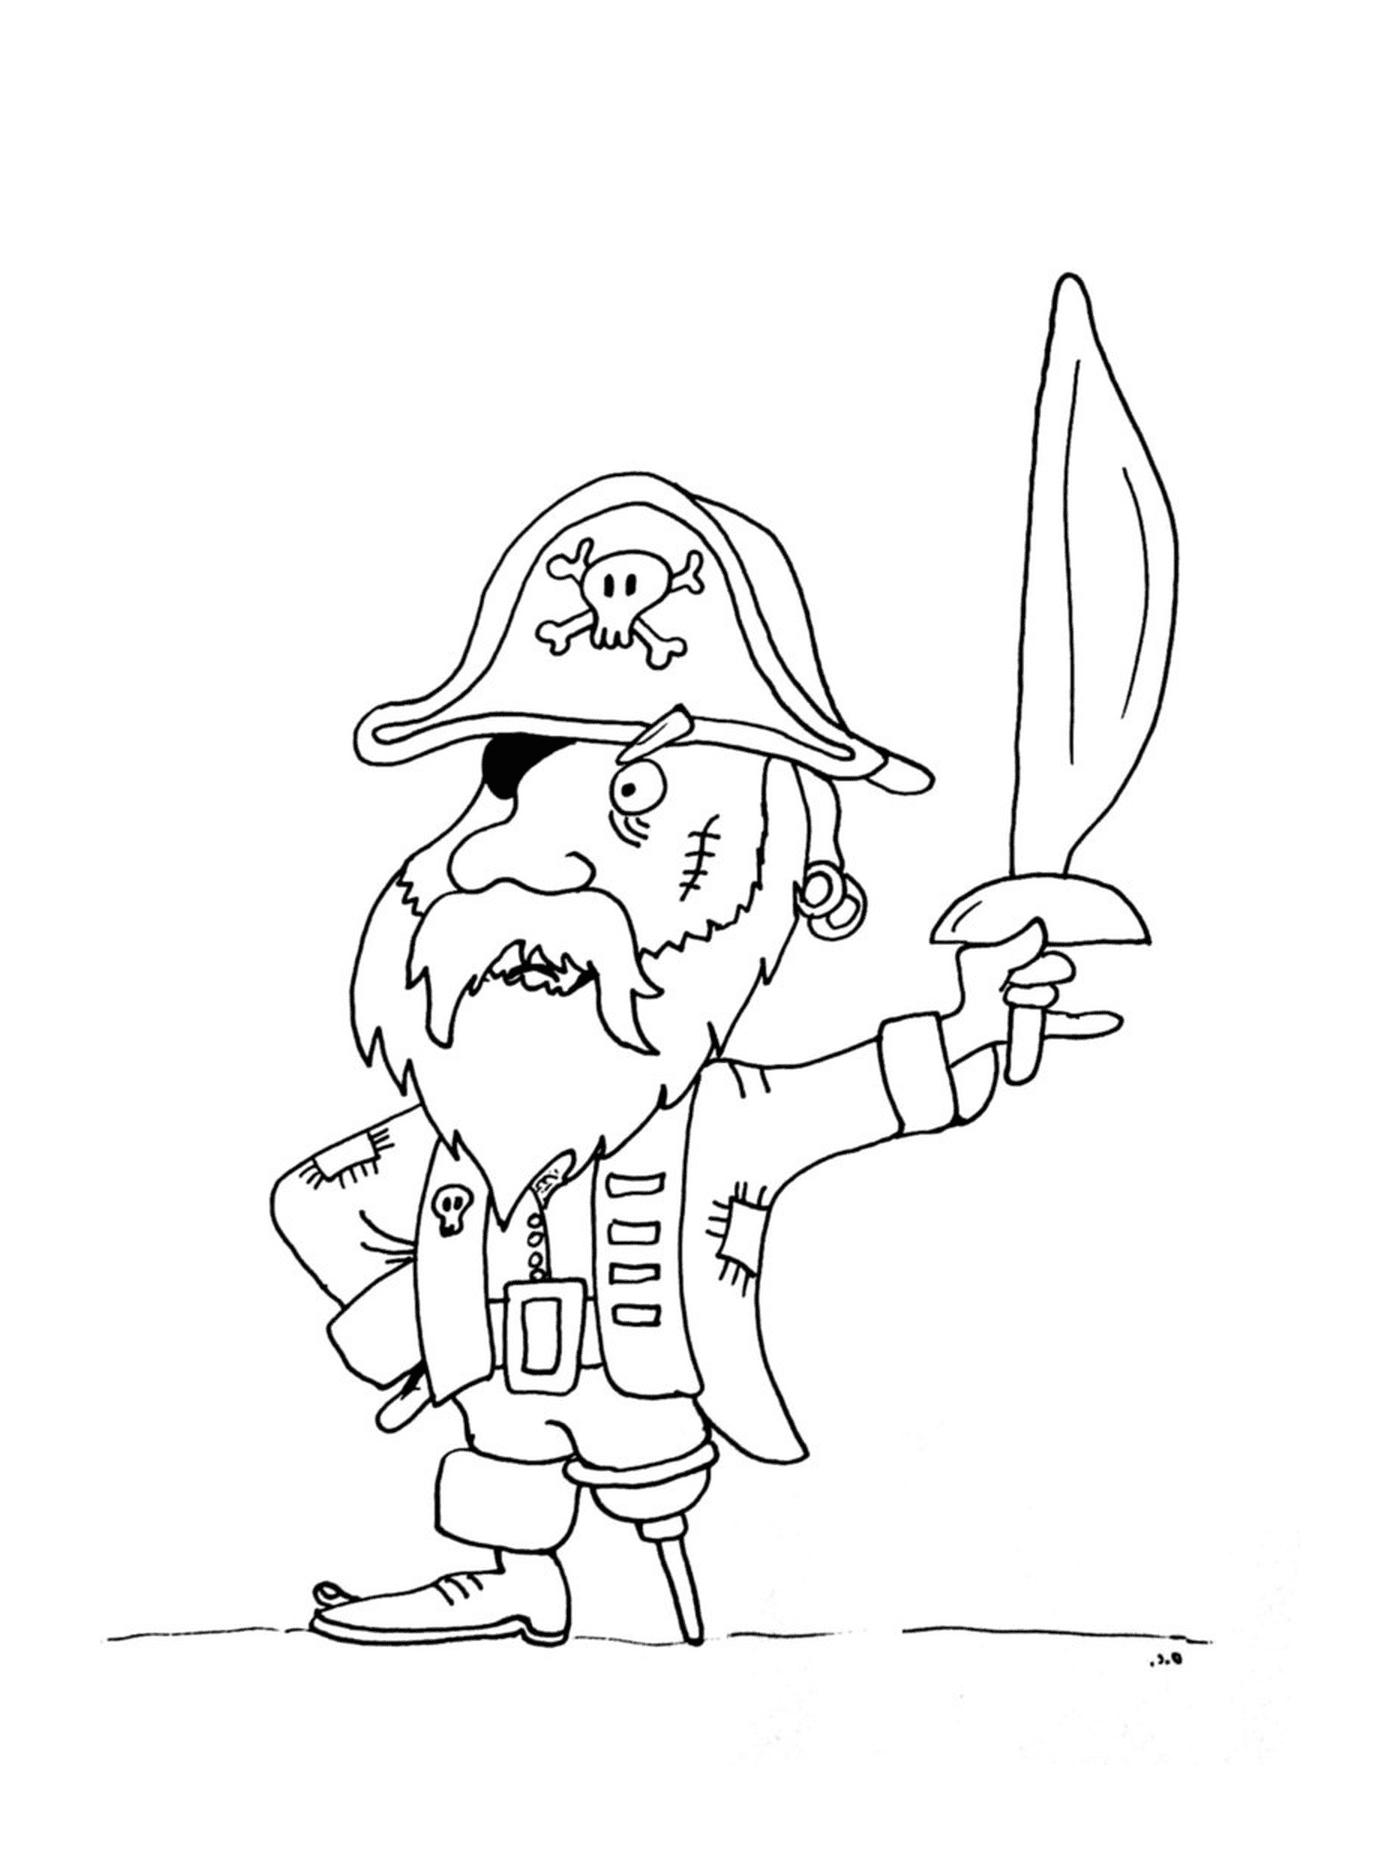  Pirata con valiente pierna de madera 